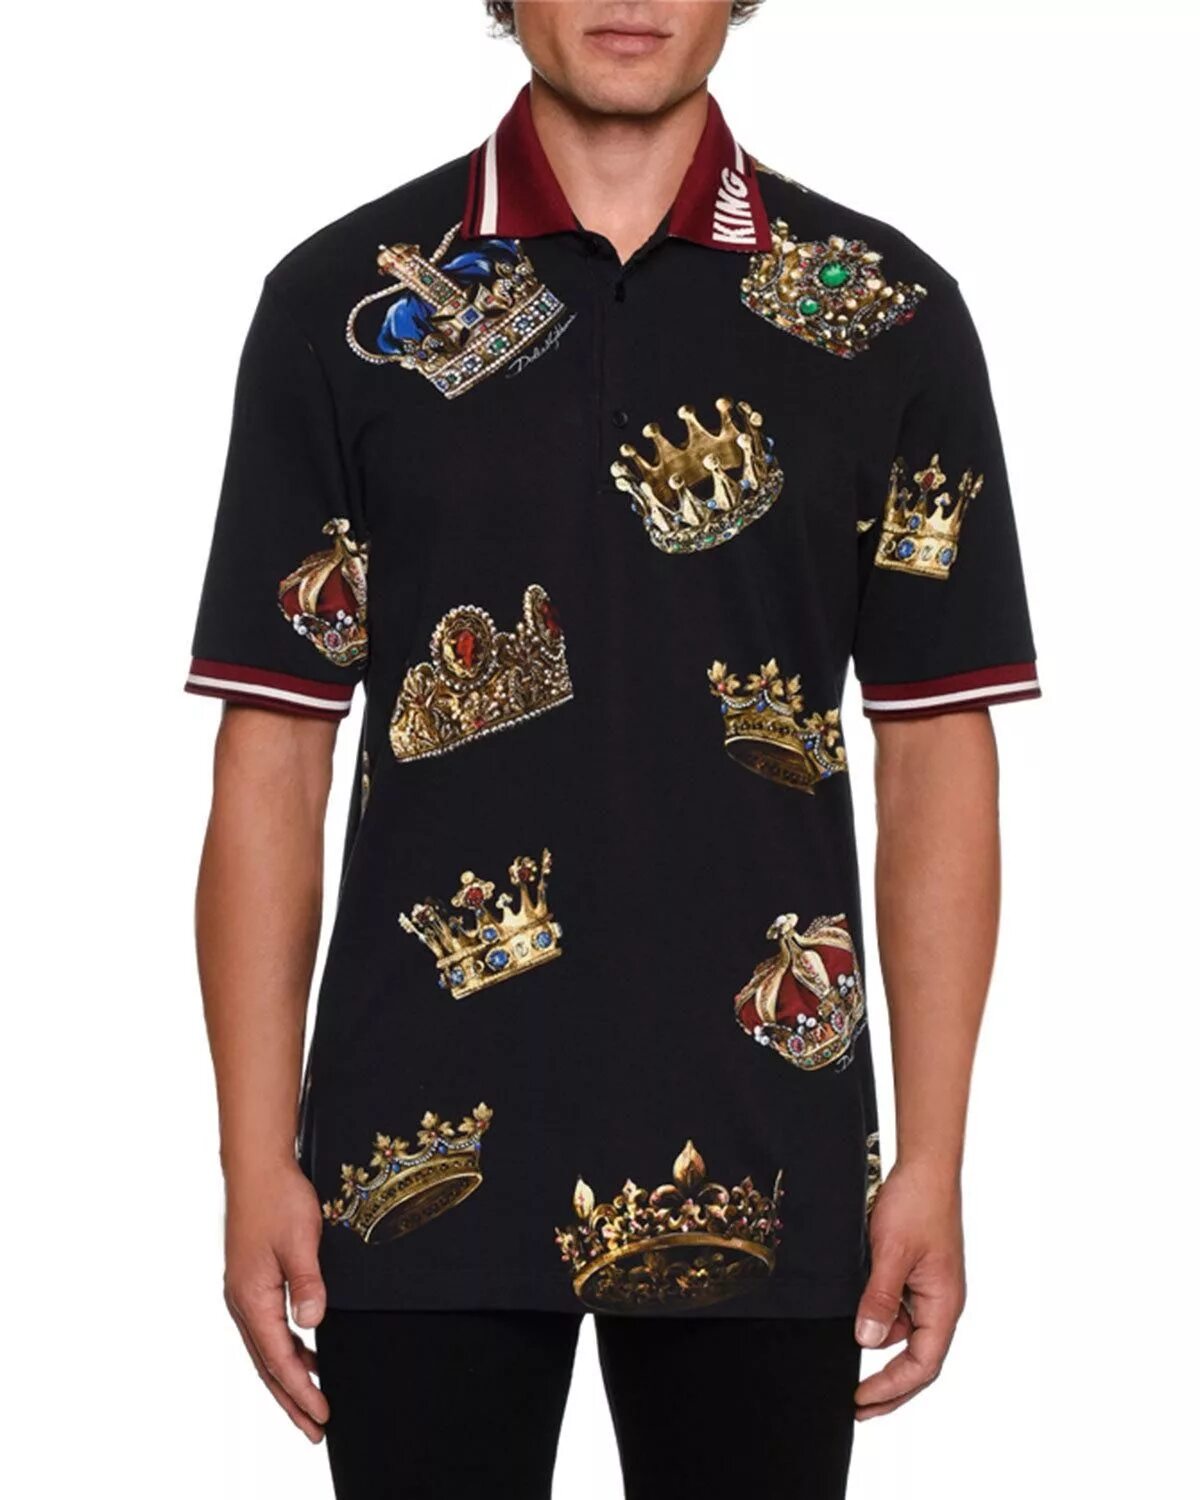 Дольче габбана мужские кинг. Dolce Gabbana Crown Shirt. Поло Dolce Gabbana. Dolce Gabbana g9m32. Dolce Gabbana King.